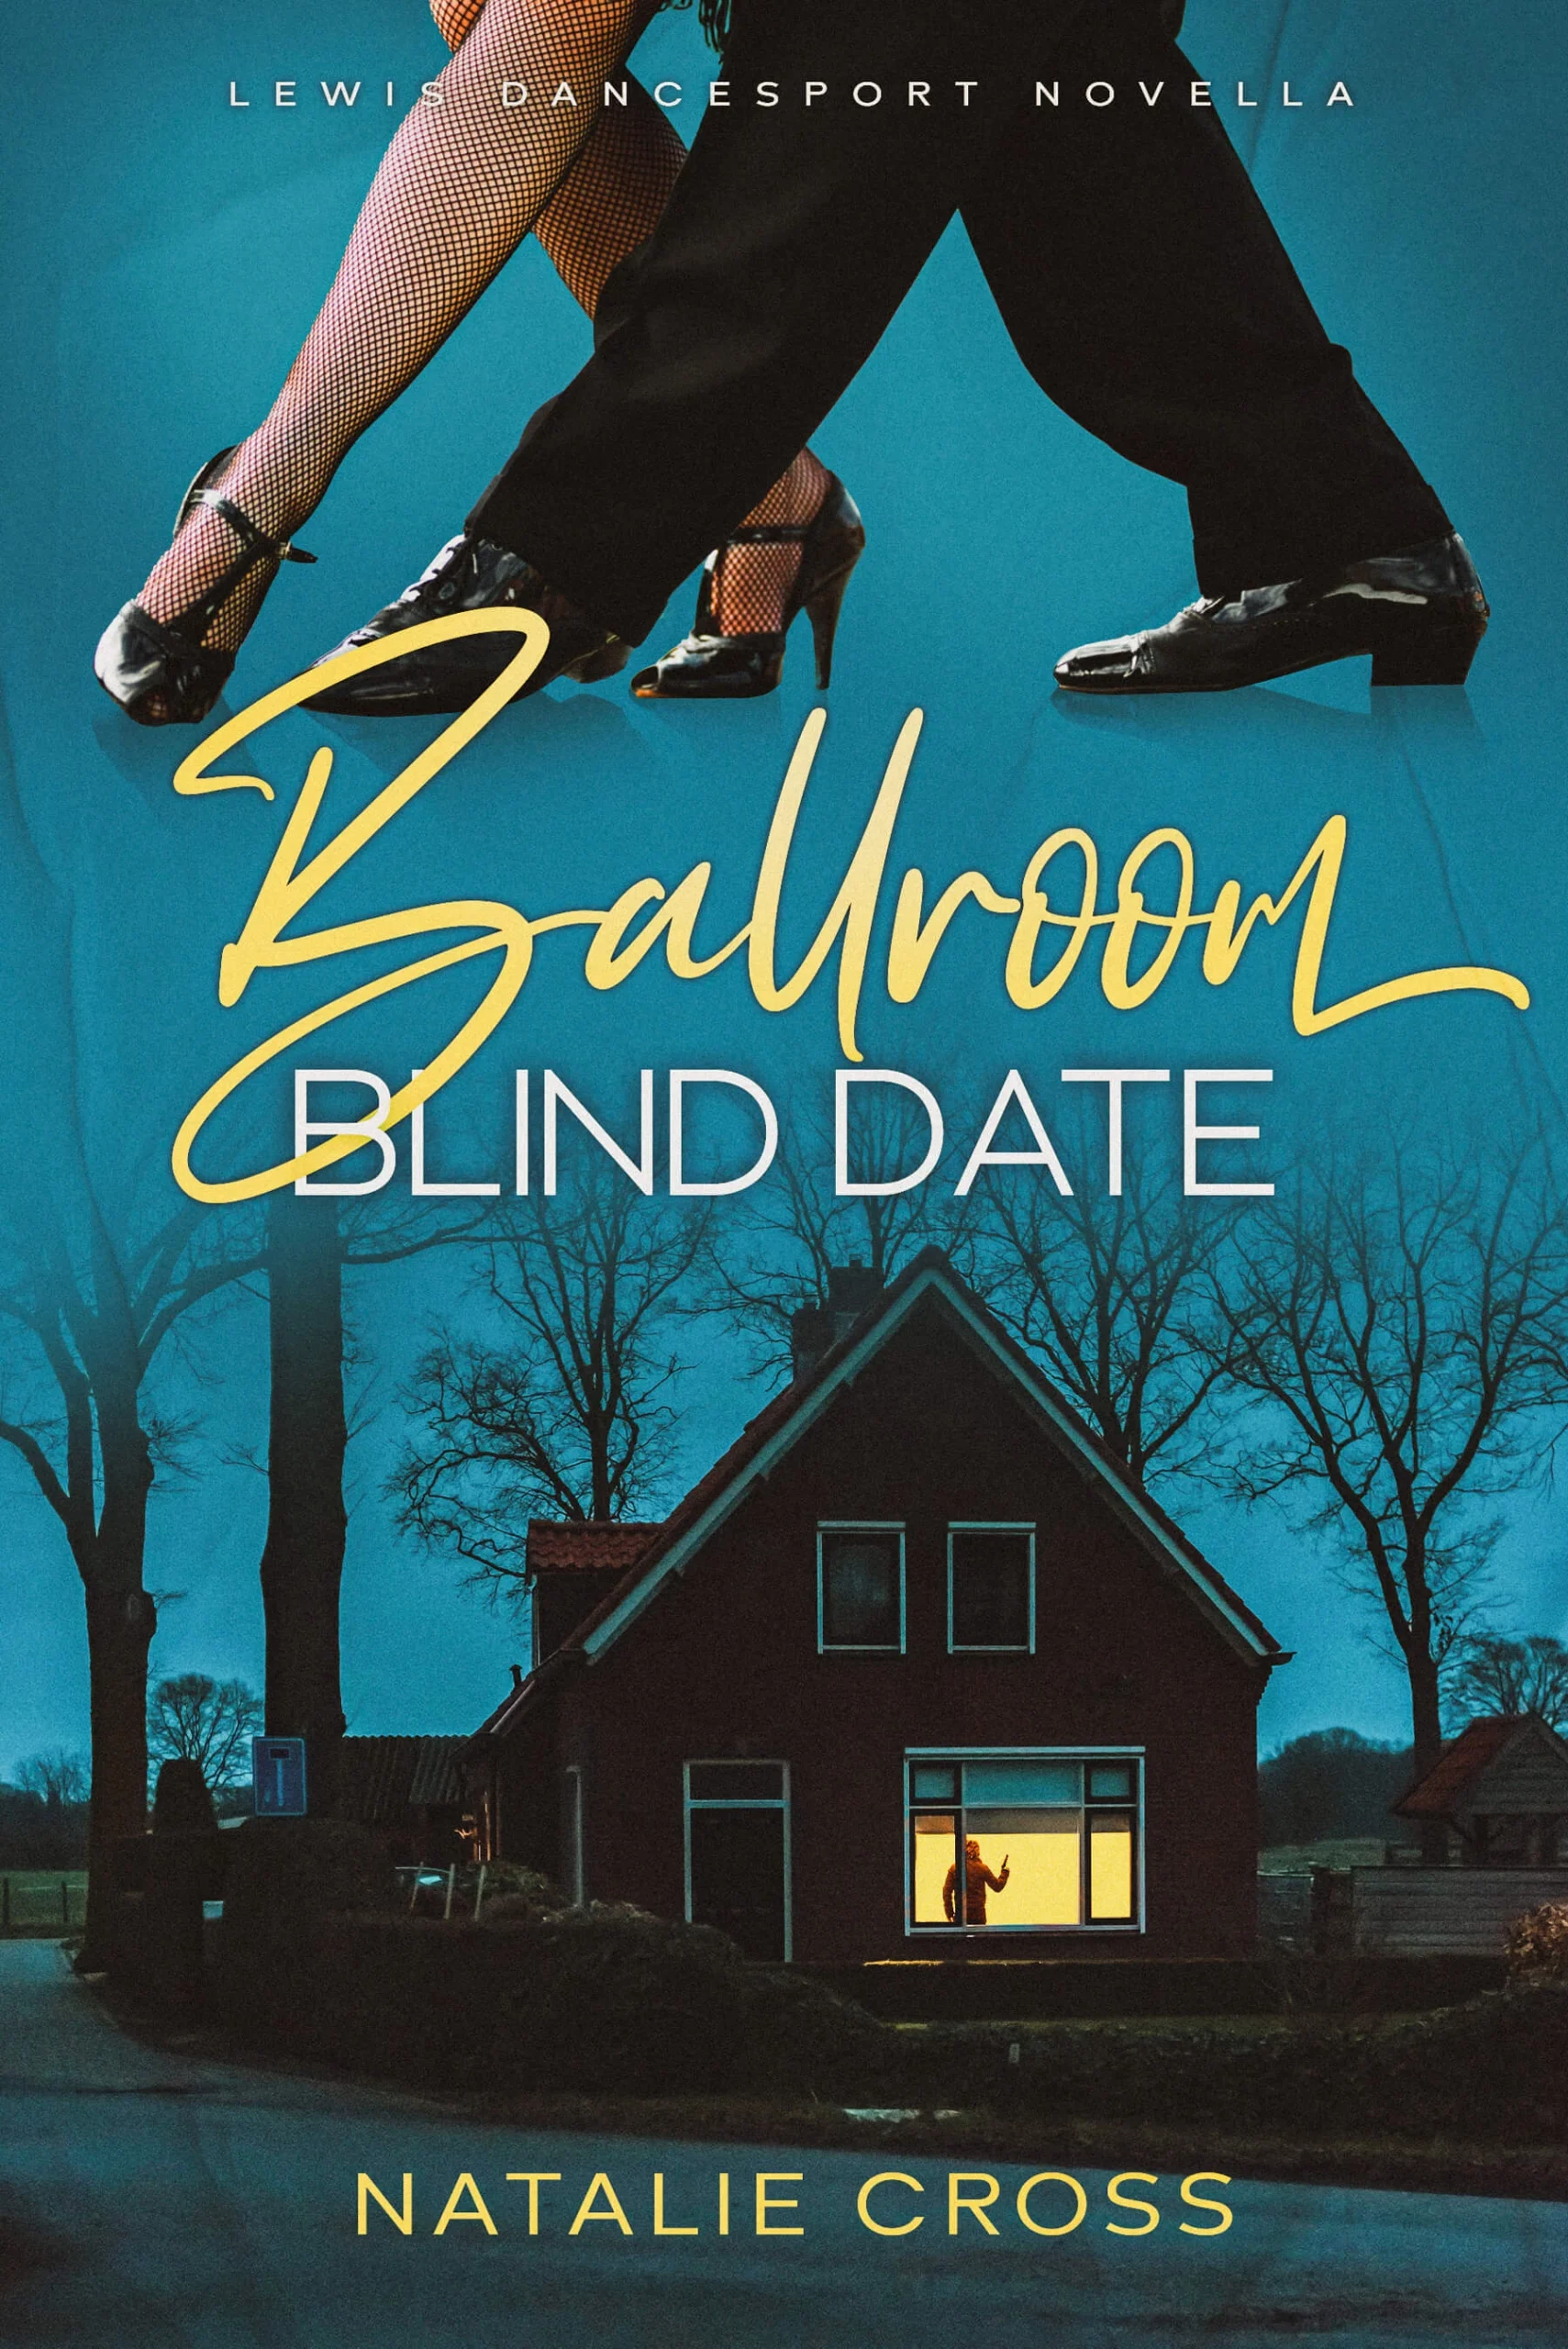 Ballroom Blind Date